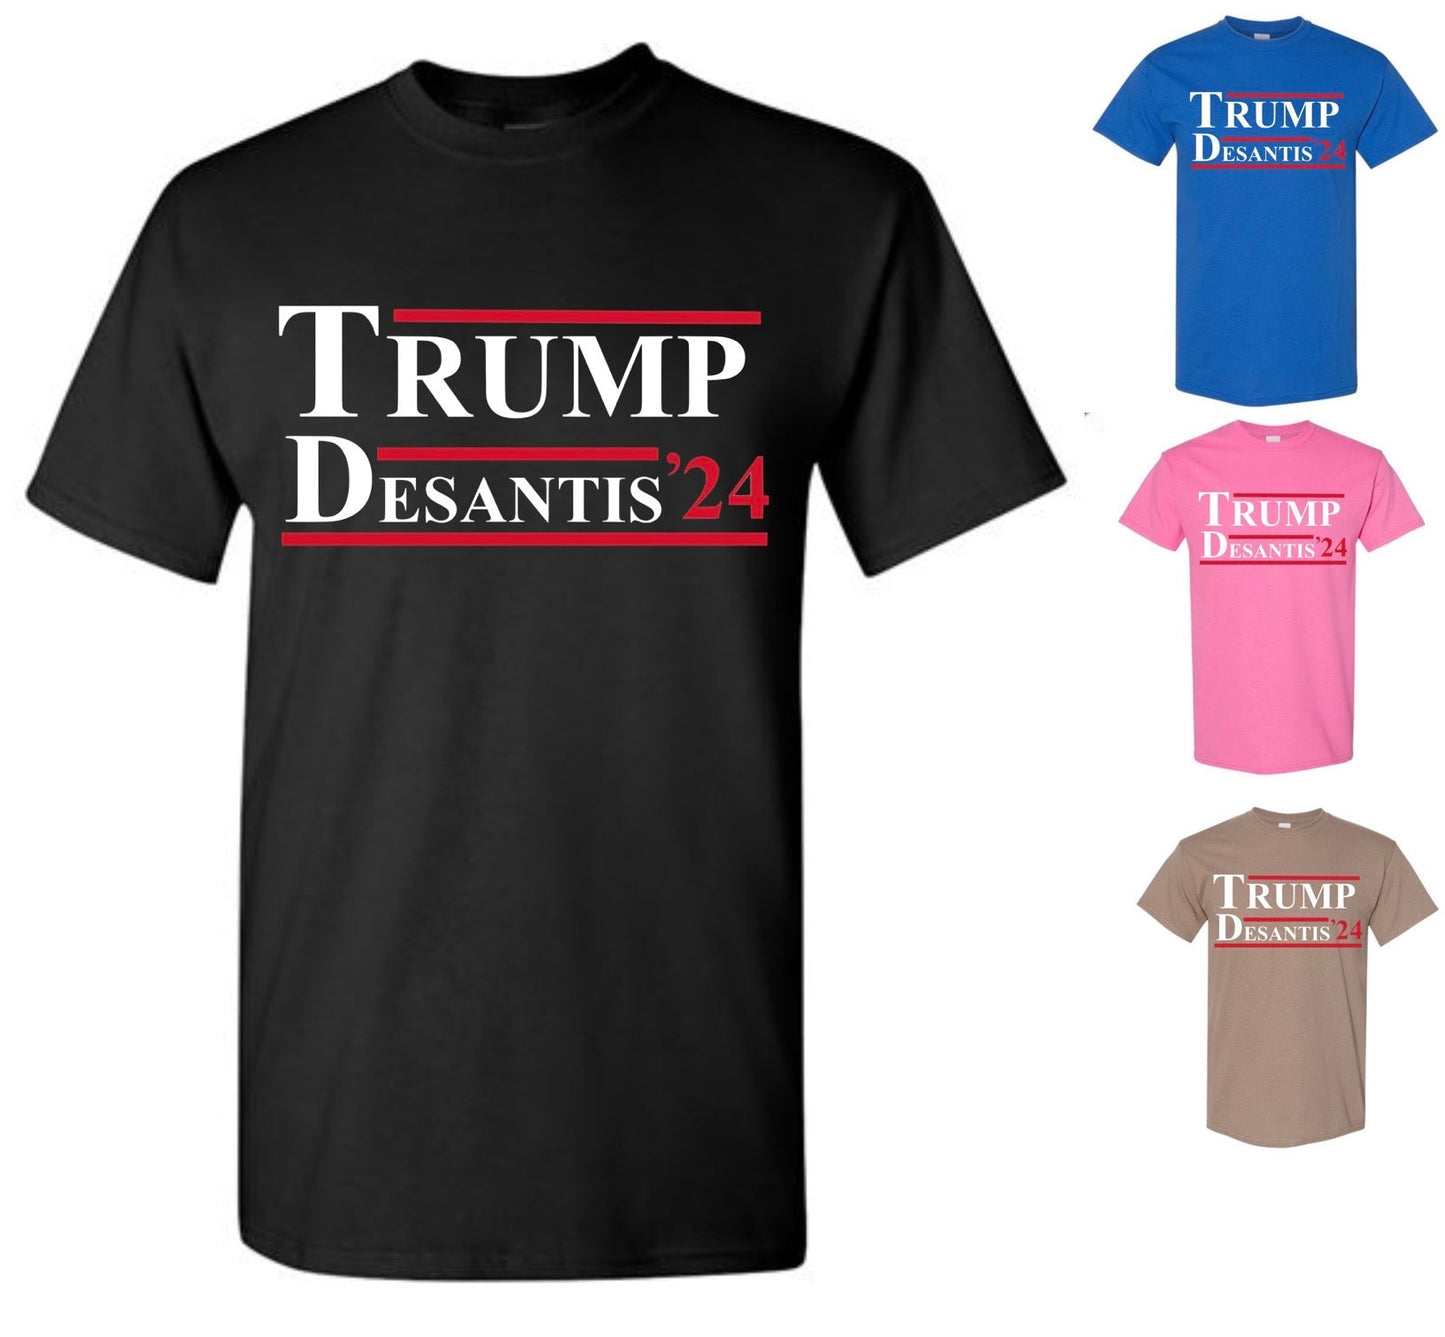 Trump DeSantis 2024 Shirt — Christmas Special